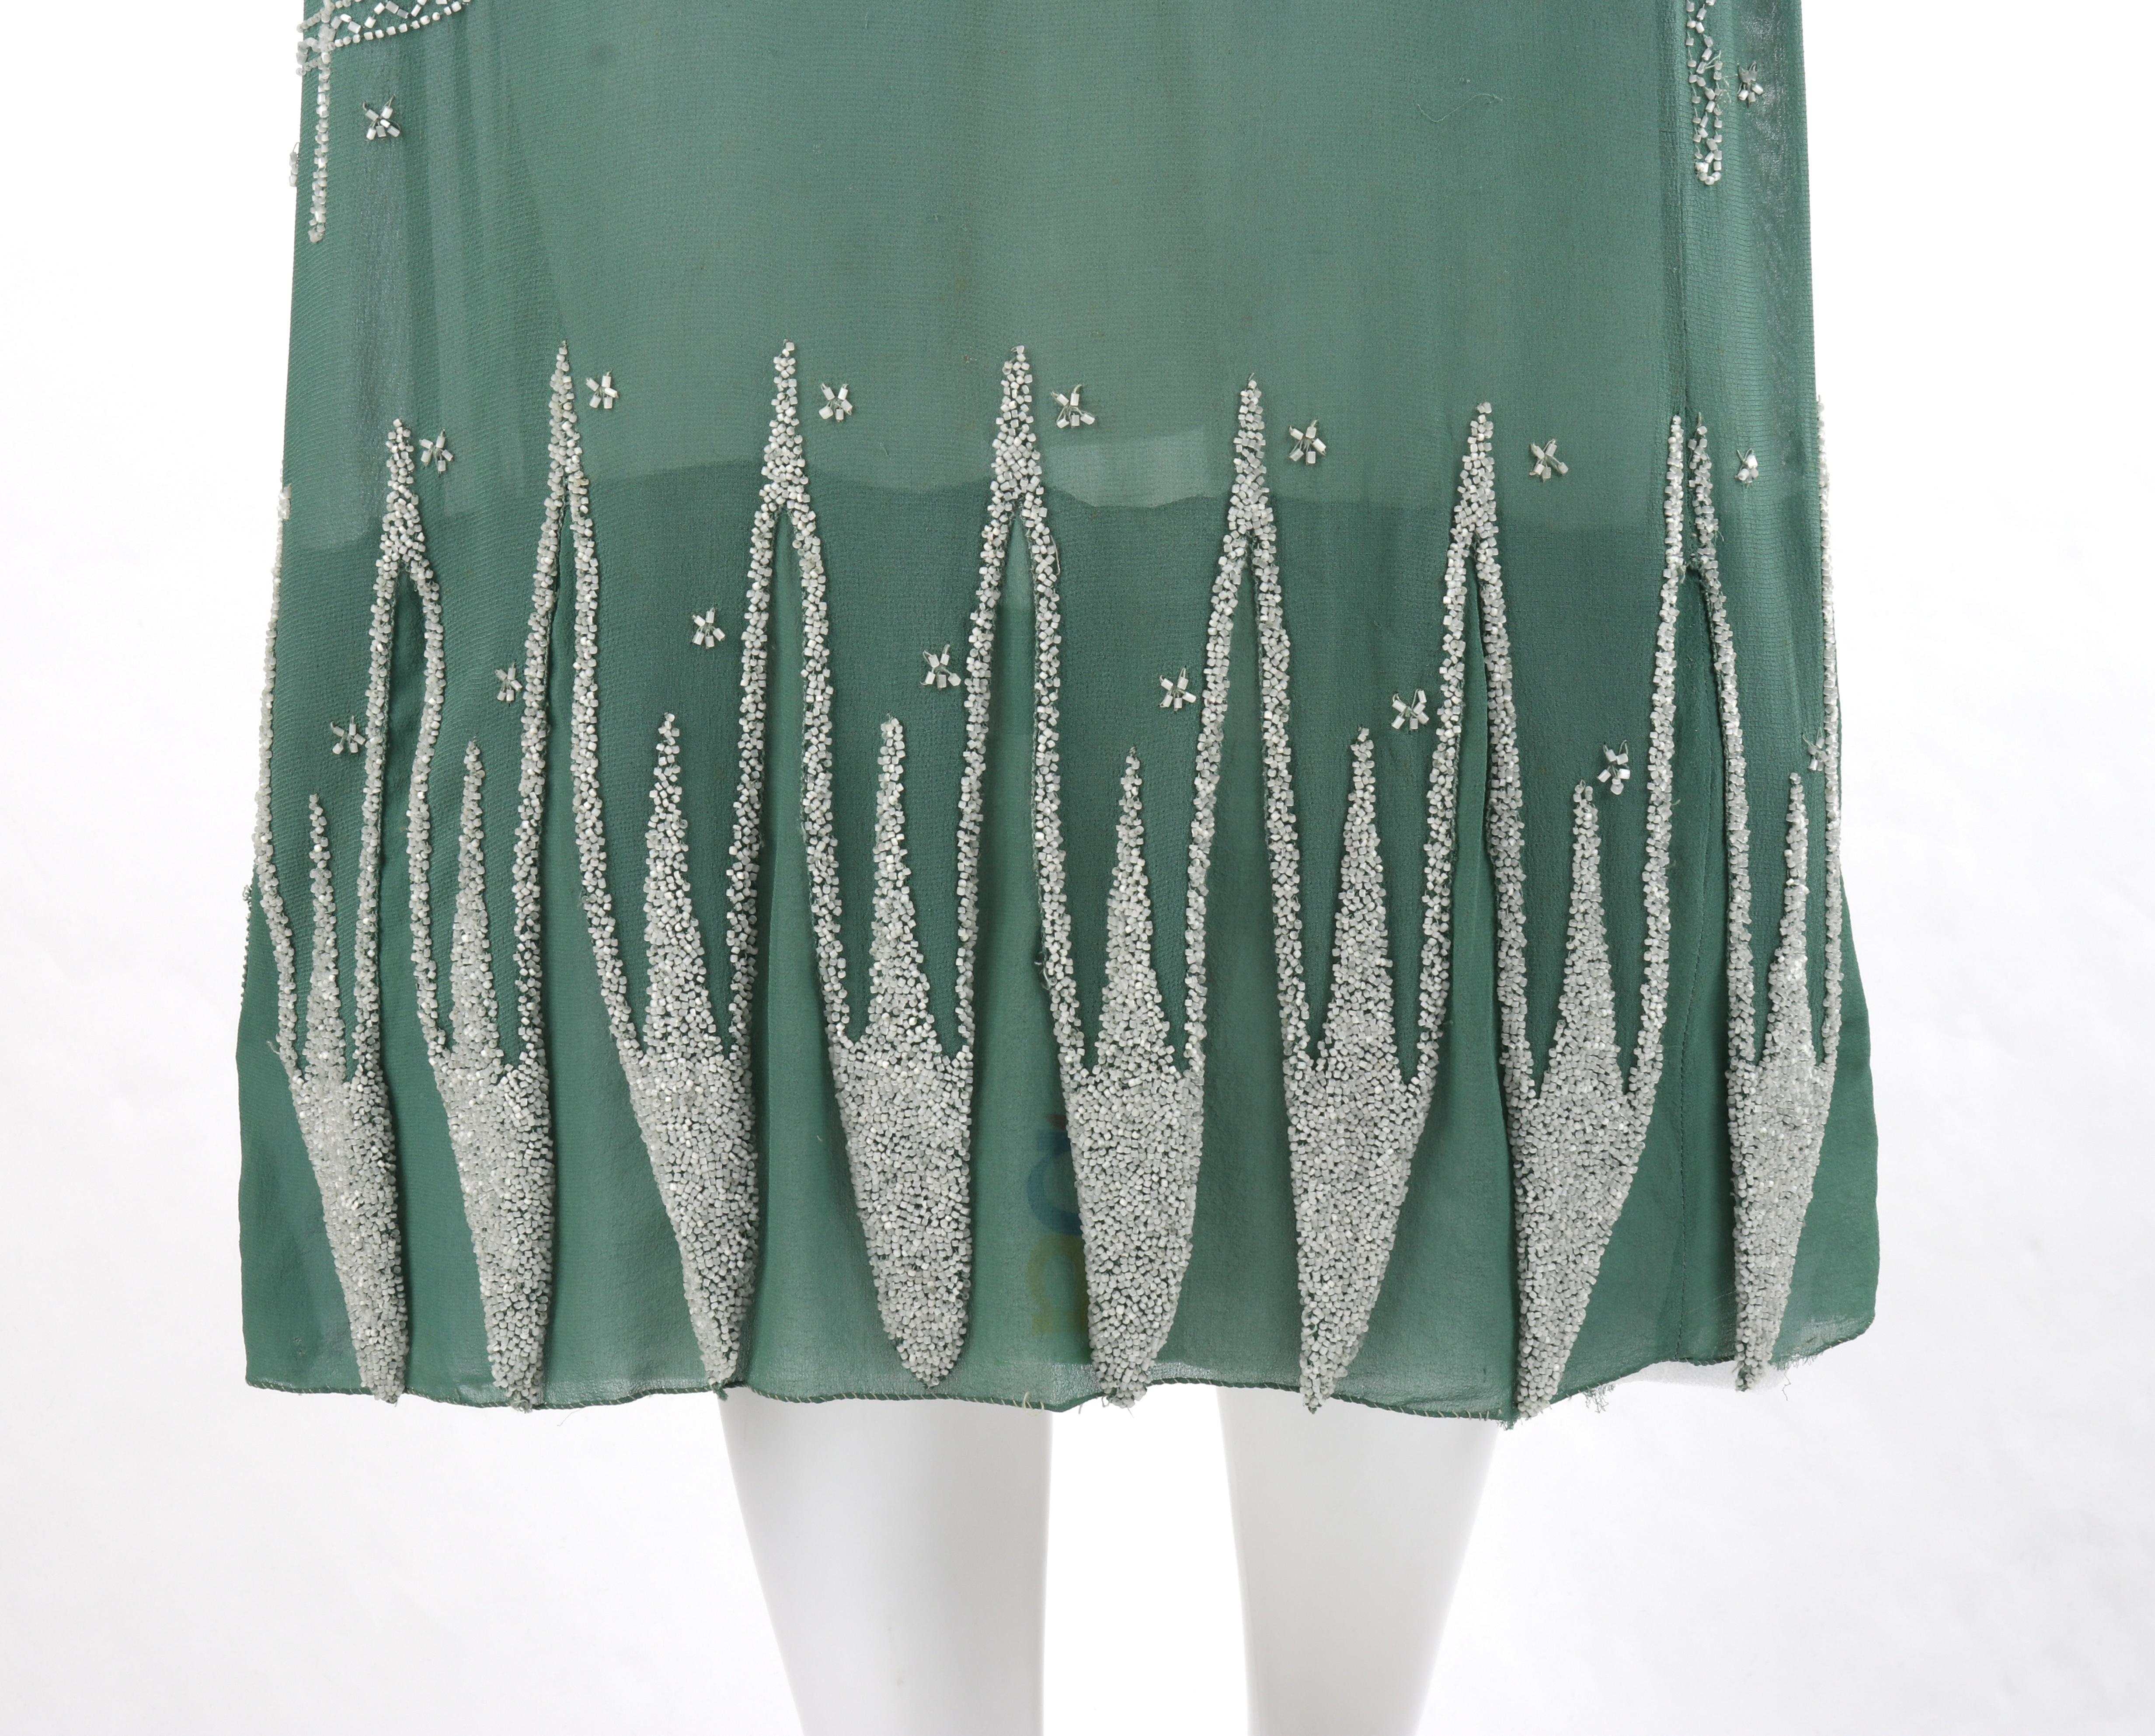 MADELEINE VIONNET c.1924 “Little Horses” Soft Green Glass Beaded Flapper Dress For Sale 2